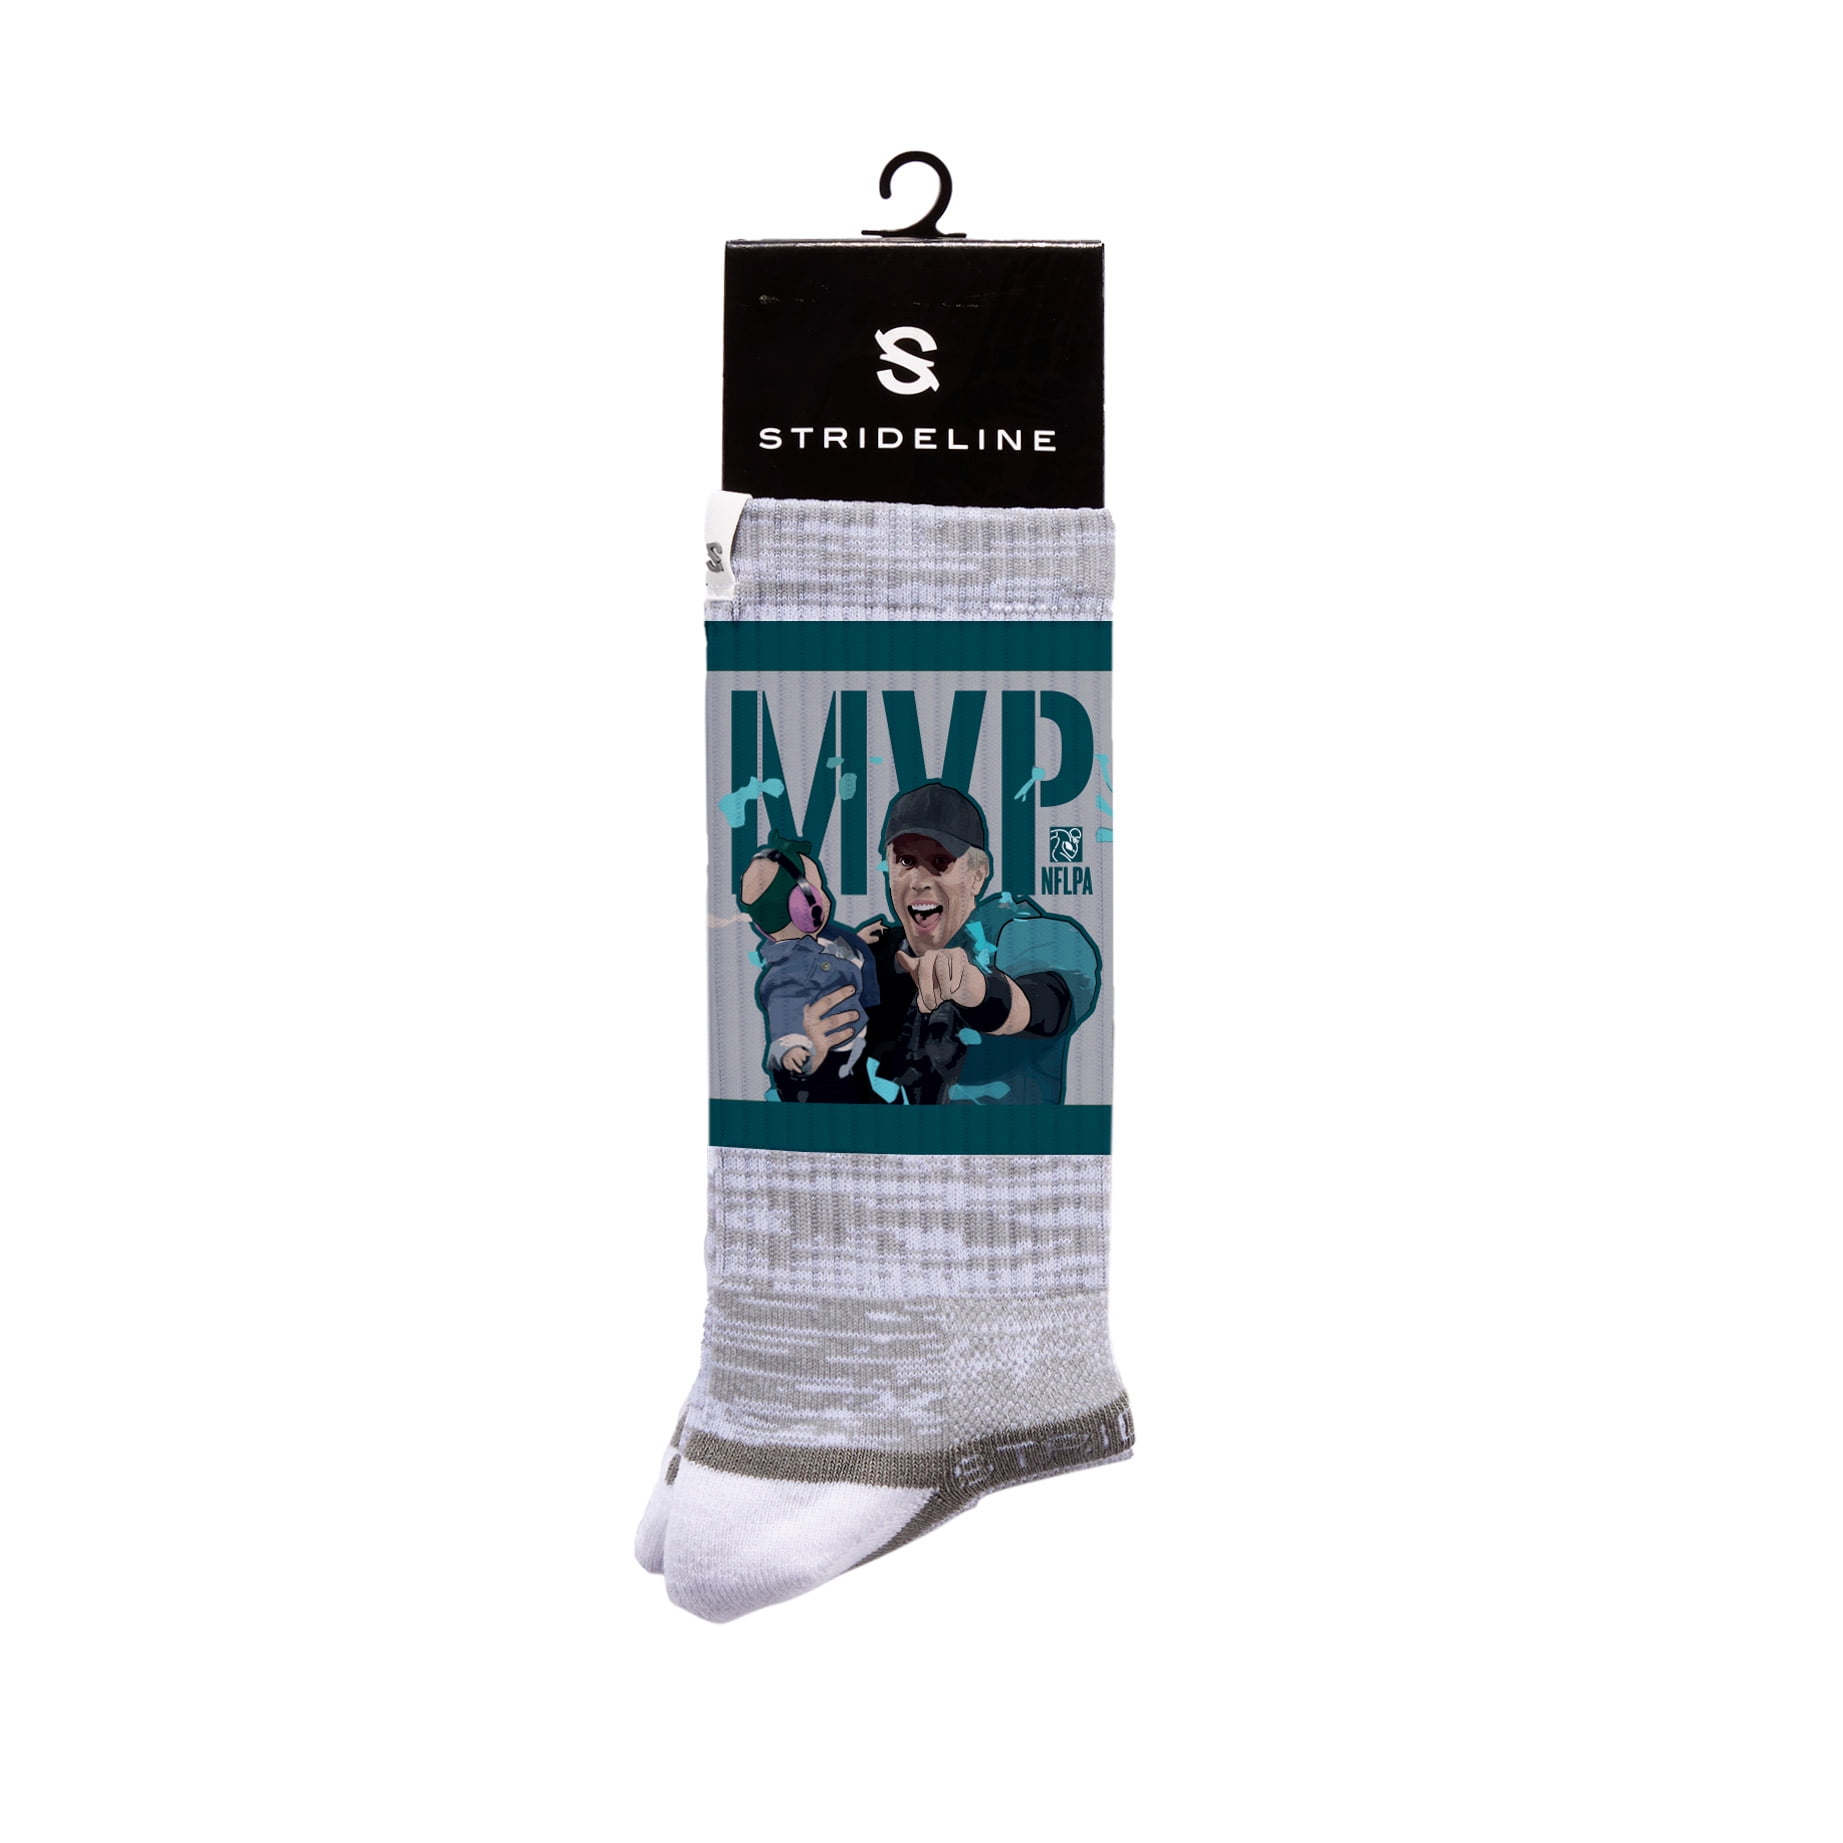 NFLPA Strideline Nick Foles MVP Full Print Crew Socks